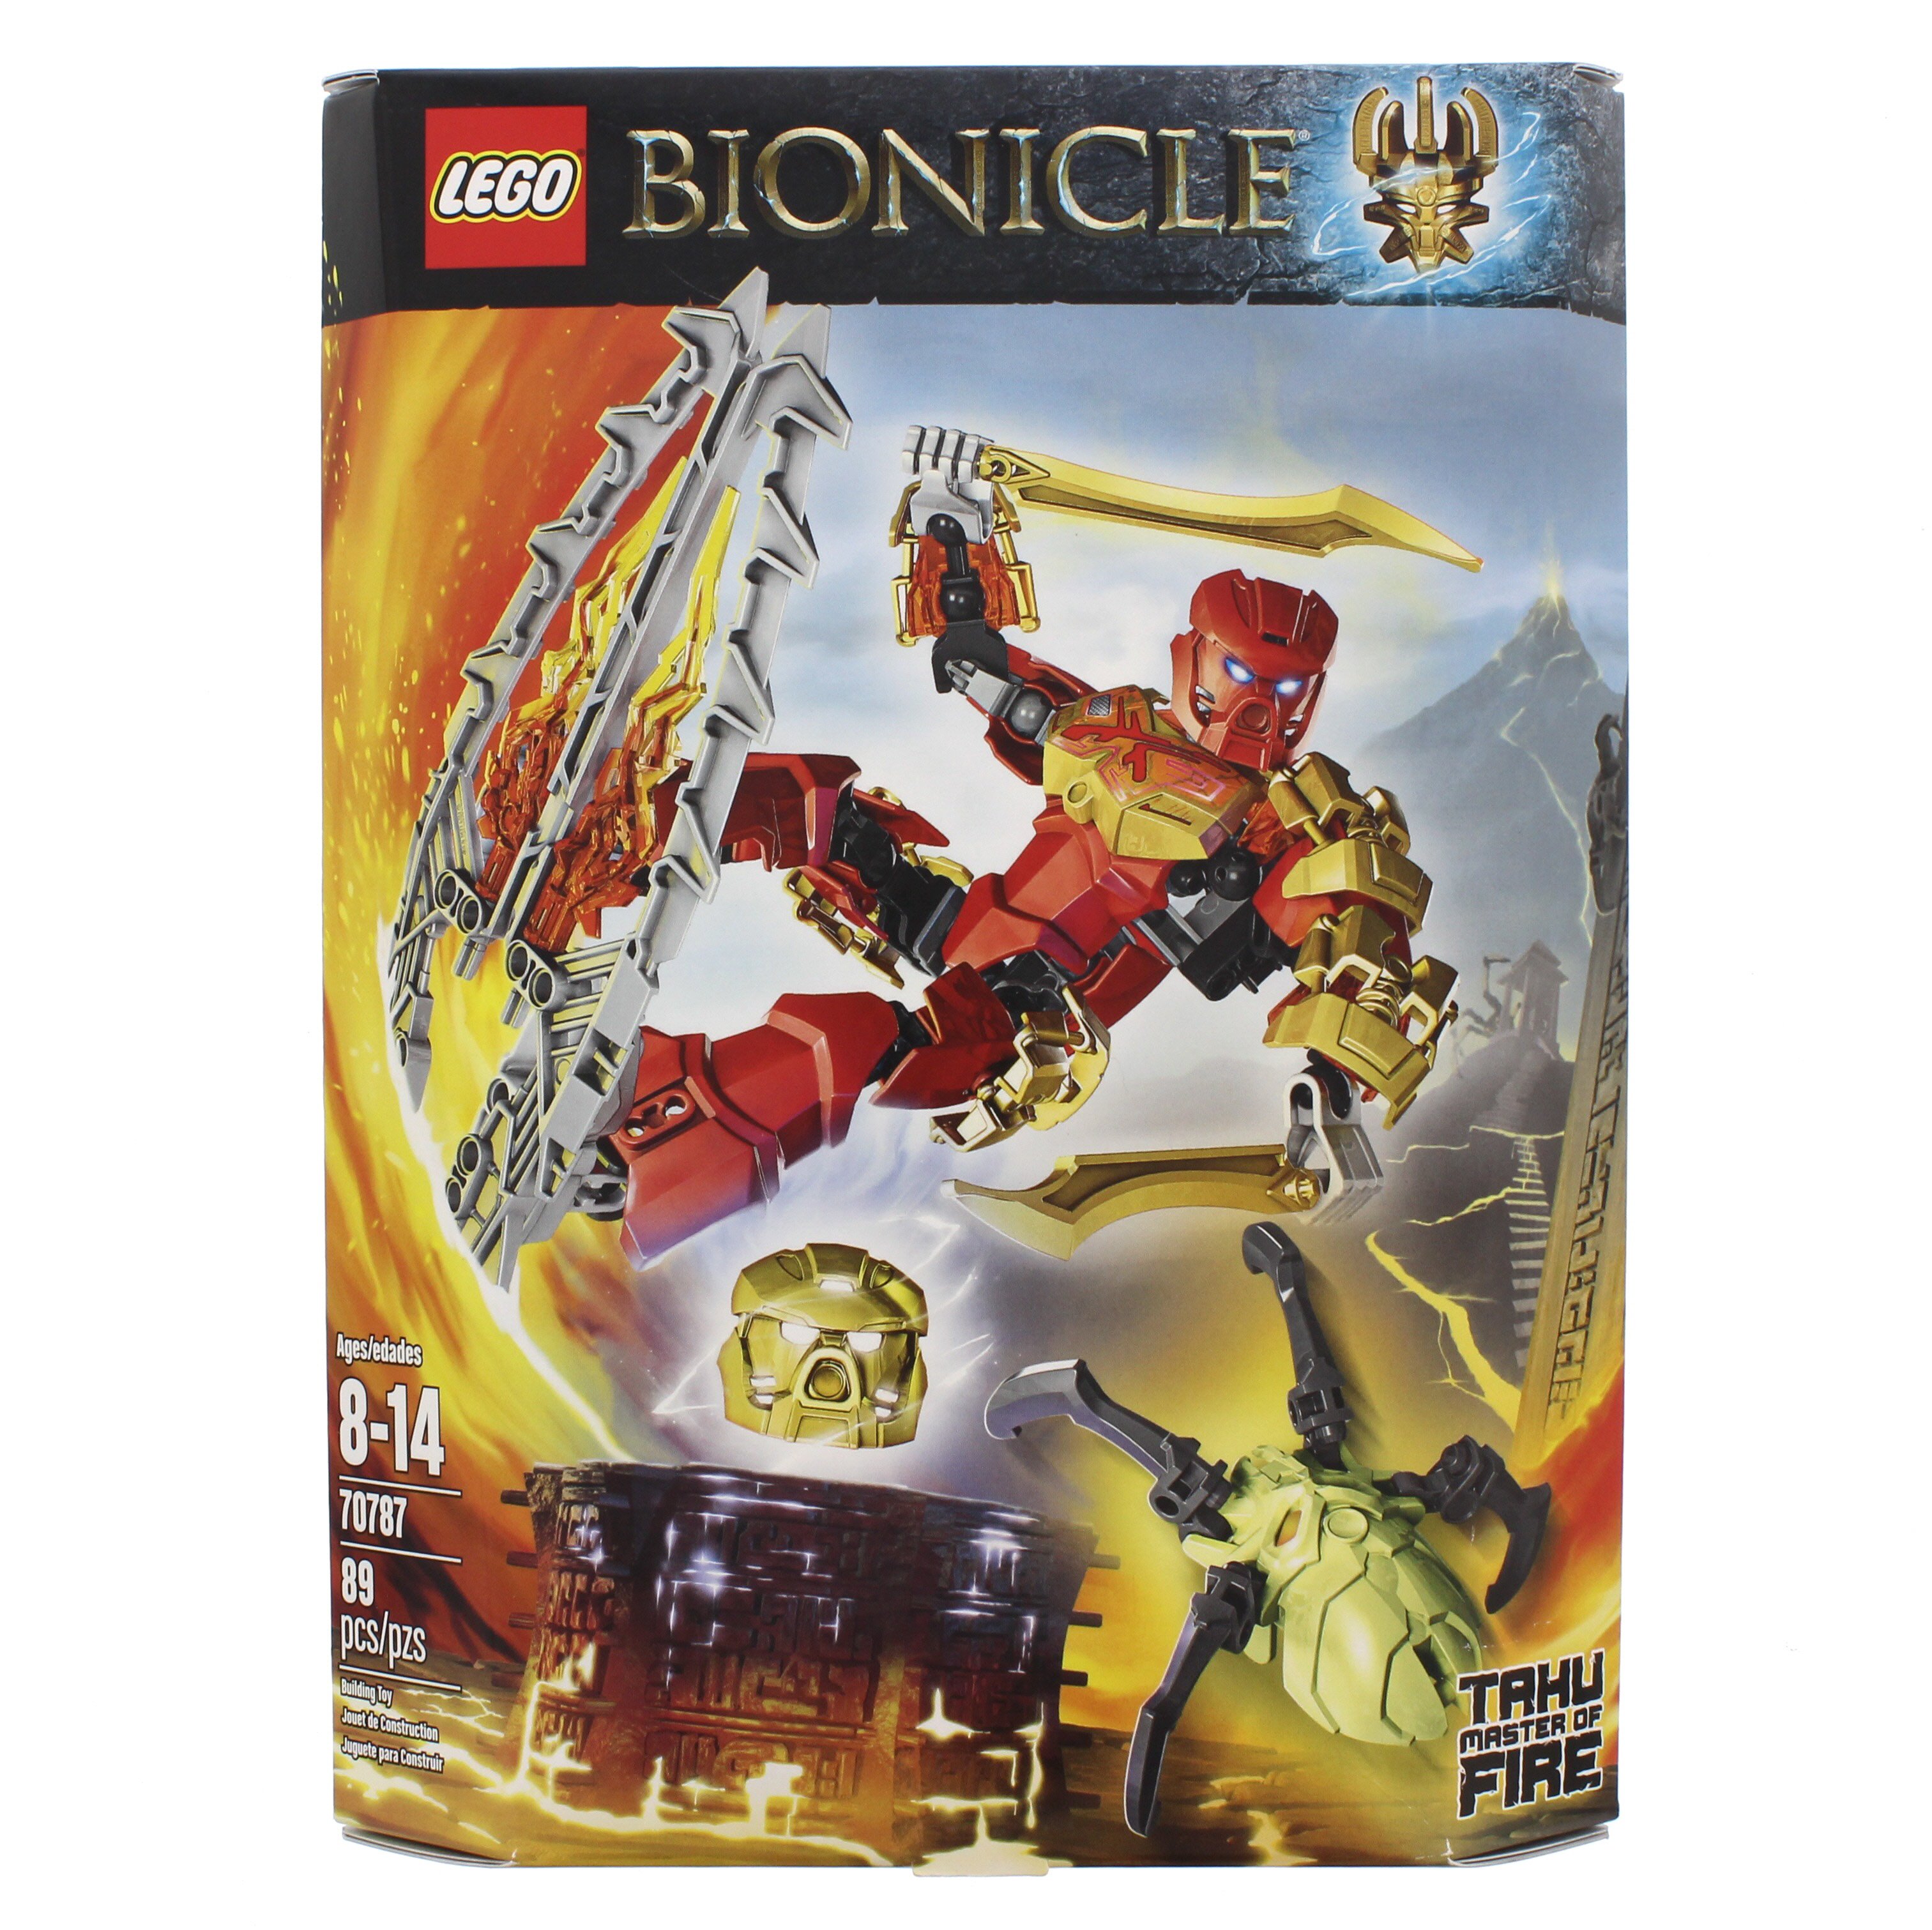 lego bionicle shop